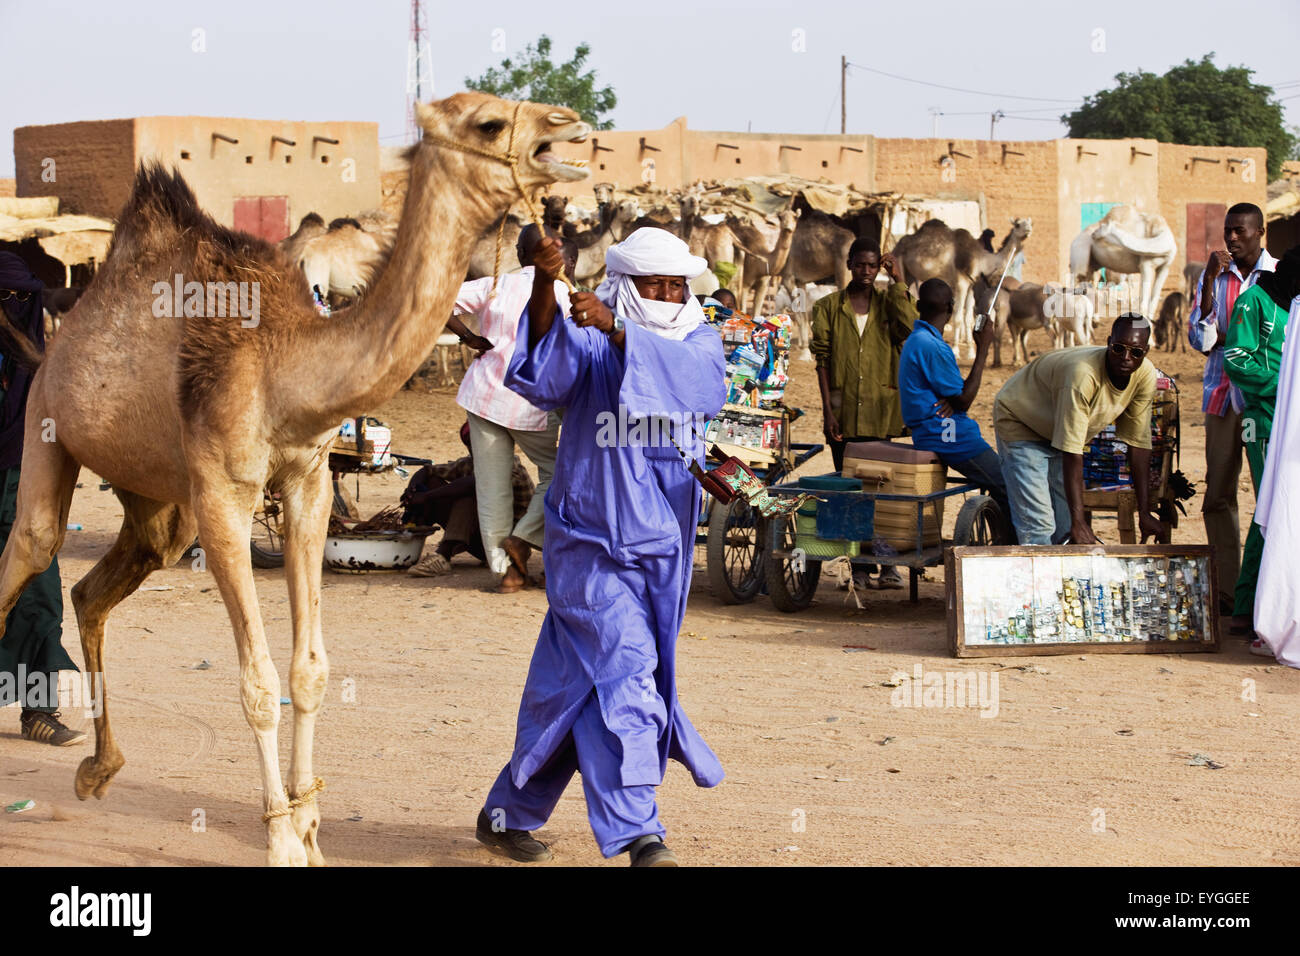 Le Niger, la région de l'air, Touareg homme portant des vêtements traditionnels avec de l'élevage de chameaux ; marché Agadez Banque D'Images